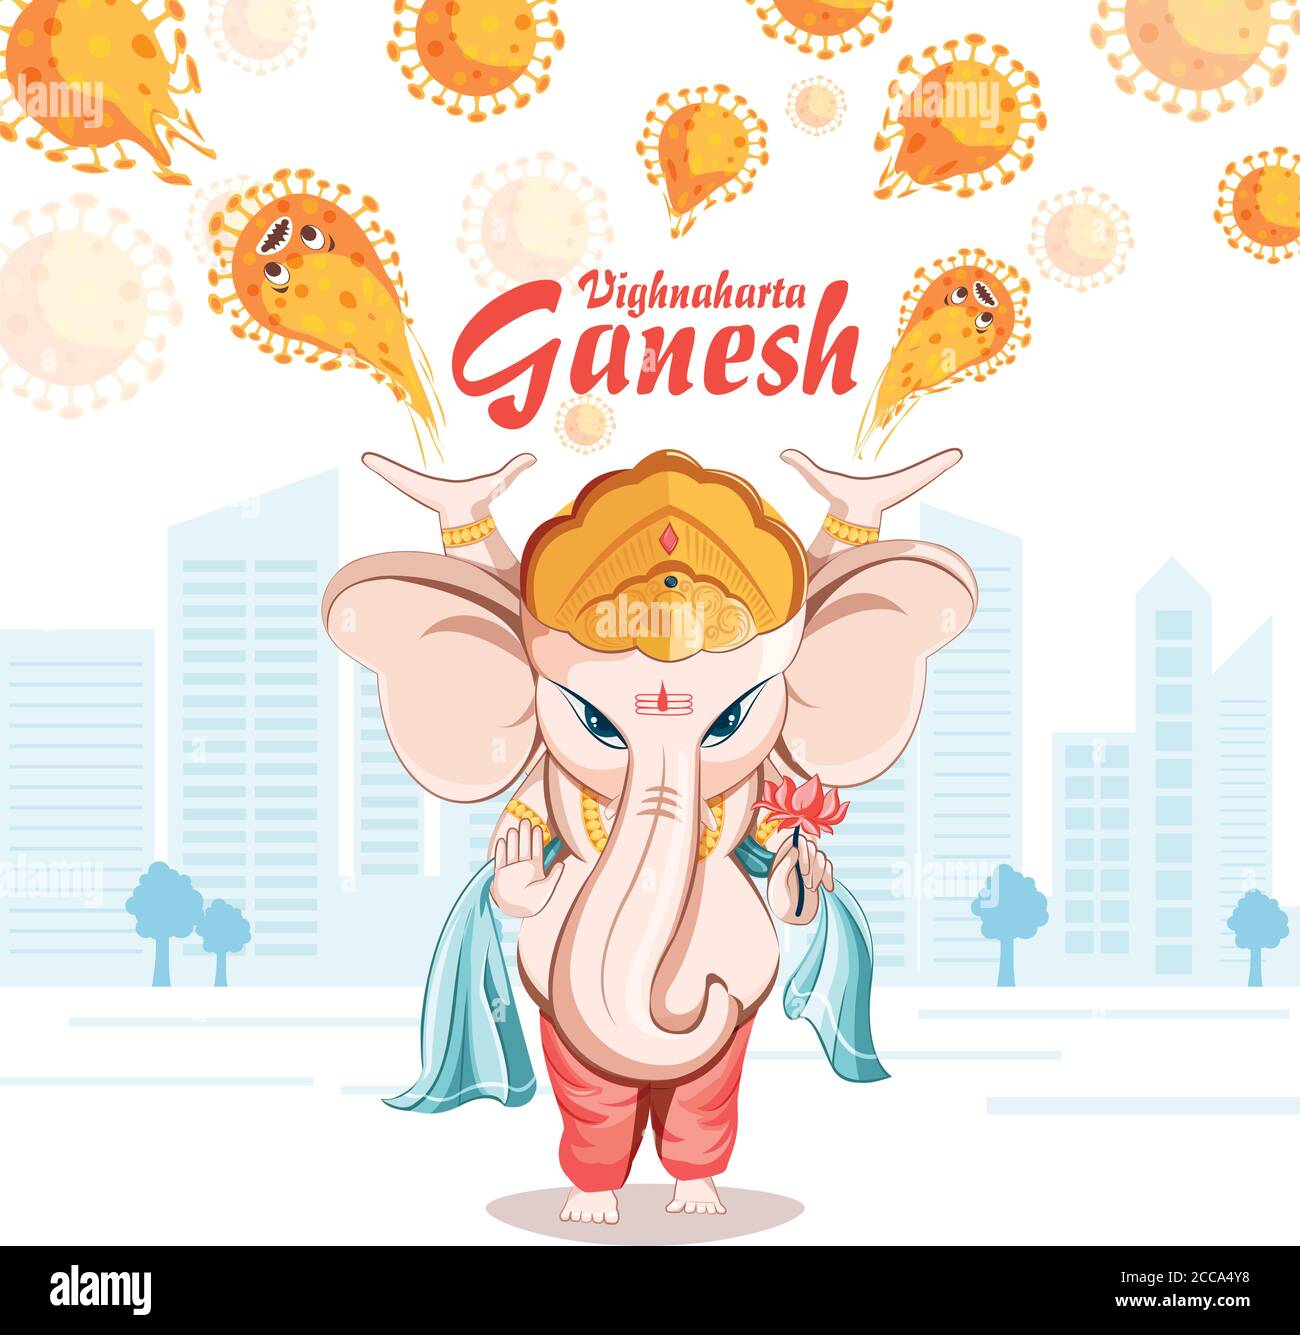 Seigneur Ganesha, illustration du seigneur Ganesha venant nous protéger de sa puissance. Illustration de Vecteur